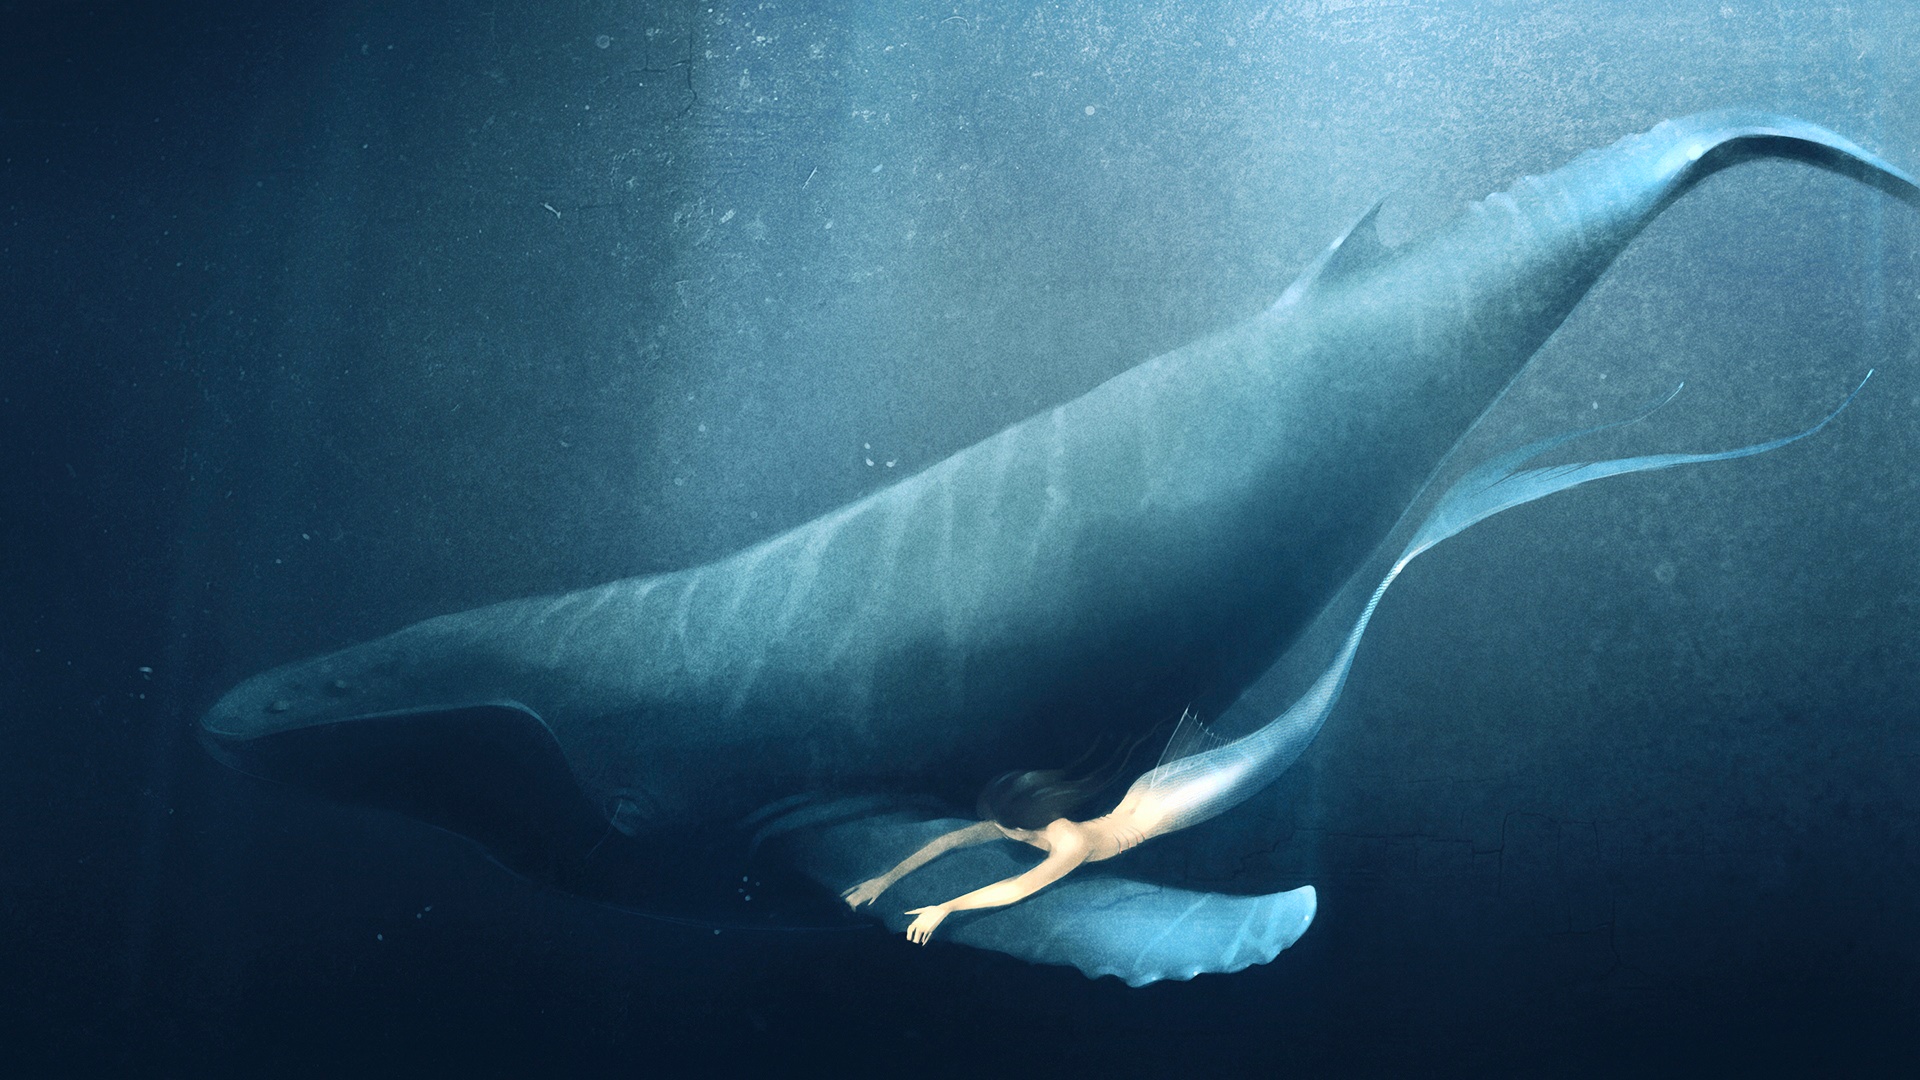 Landscape Portrait - Mermaid Whale , HD Wallpaper & Backgrounds